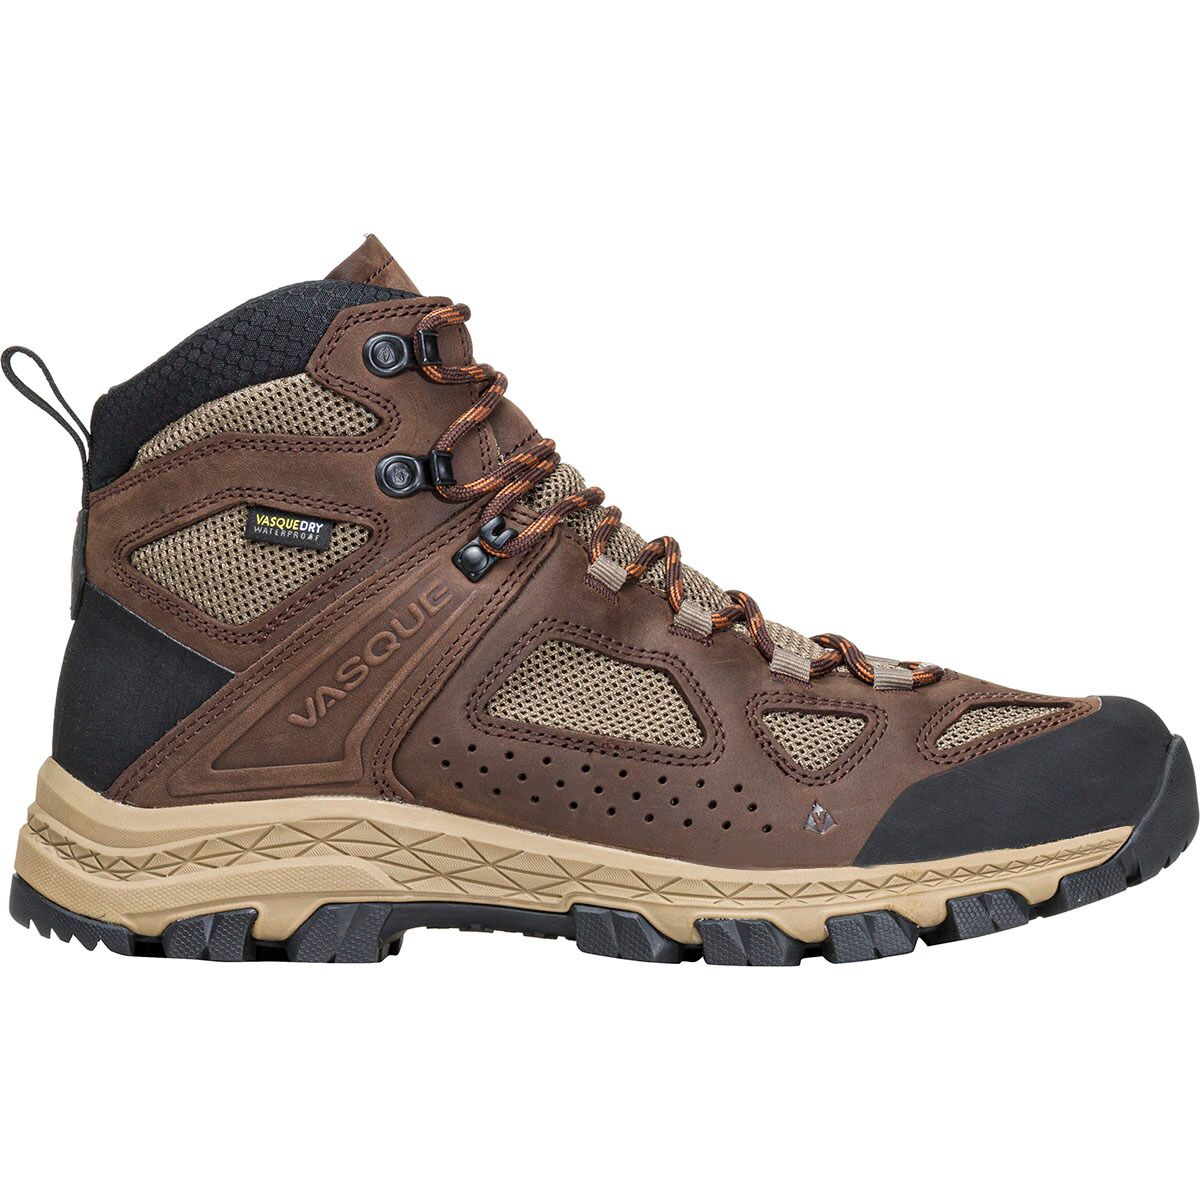 Vasque Breeze Hiking Boot - Men's Java, 10.5